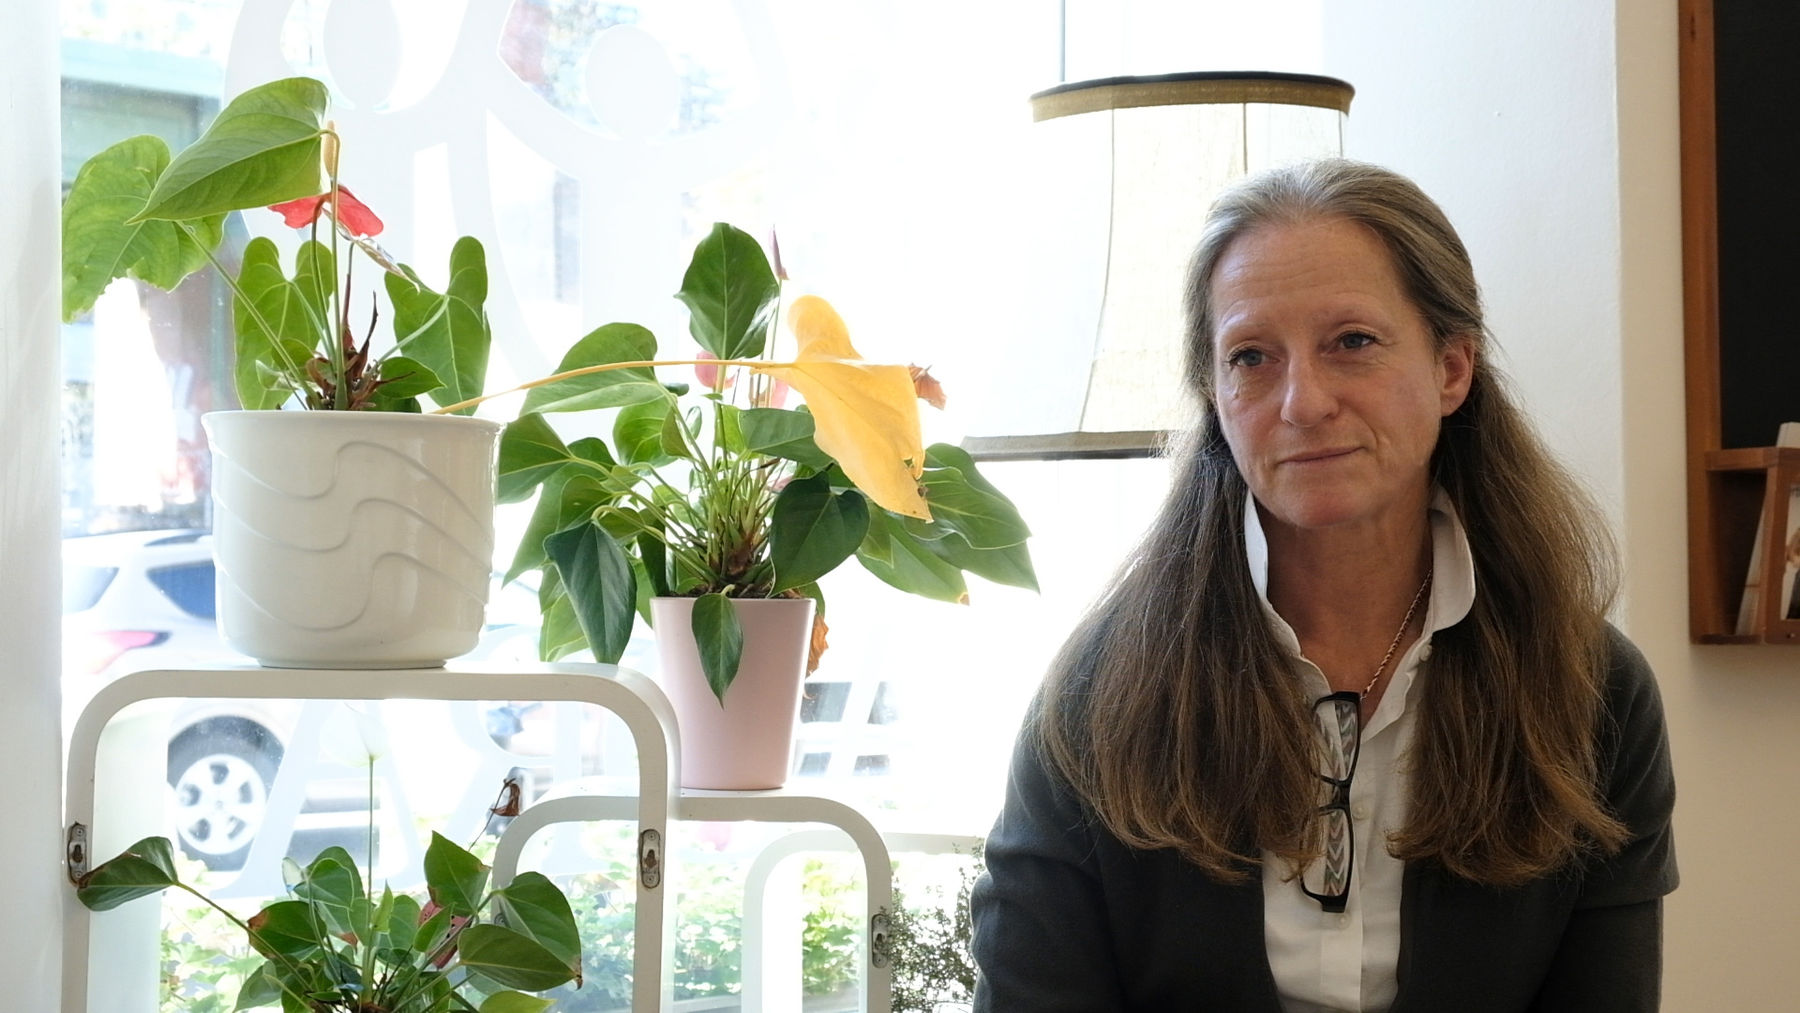 Interview mit der Projektleiterin Margit Johannik in den Räumlichkeiten des Sozialzentrums.